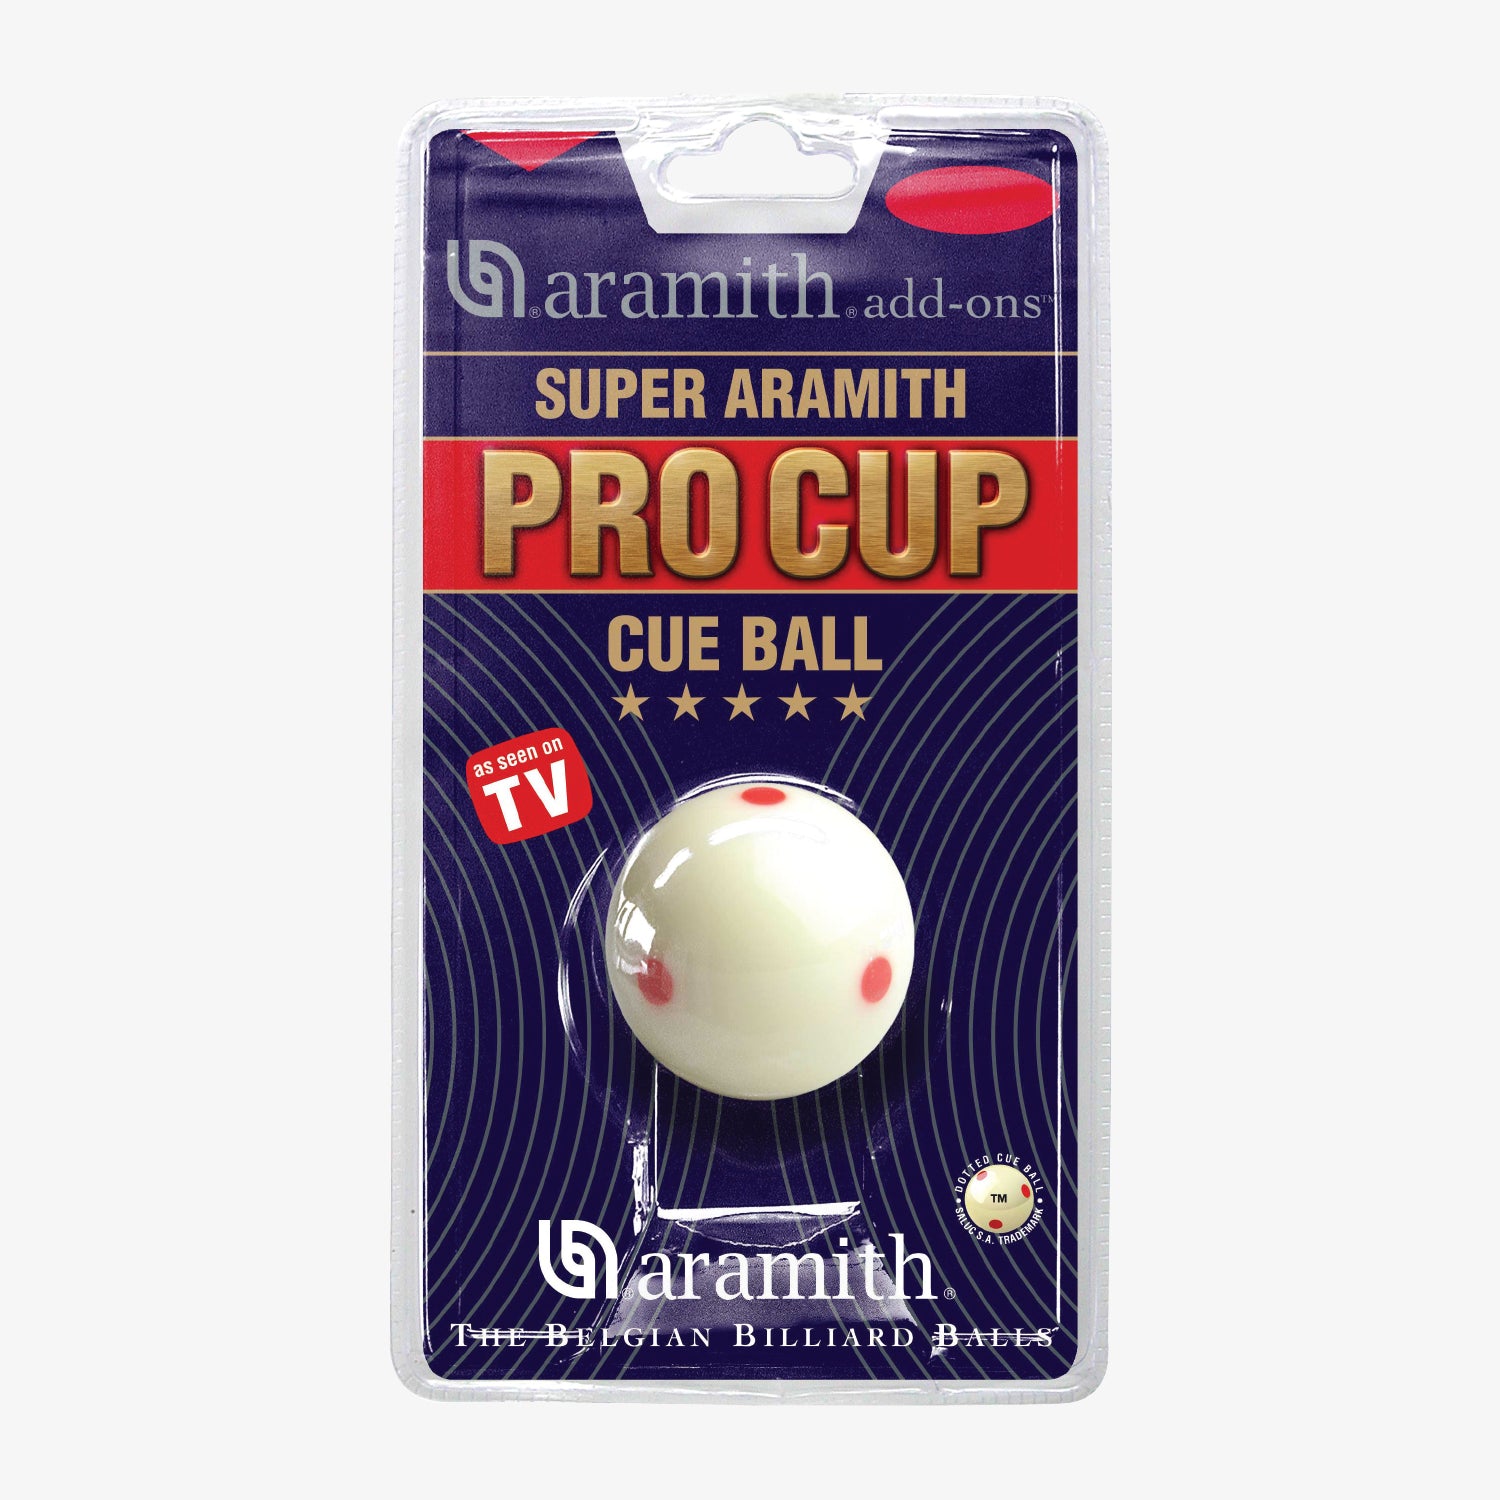 Super Aramith Pro Cup Cue Ball 2 1/4-in.